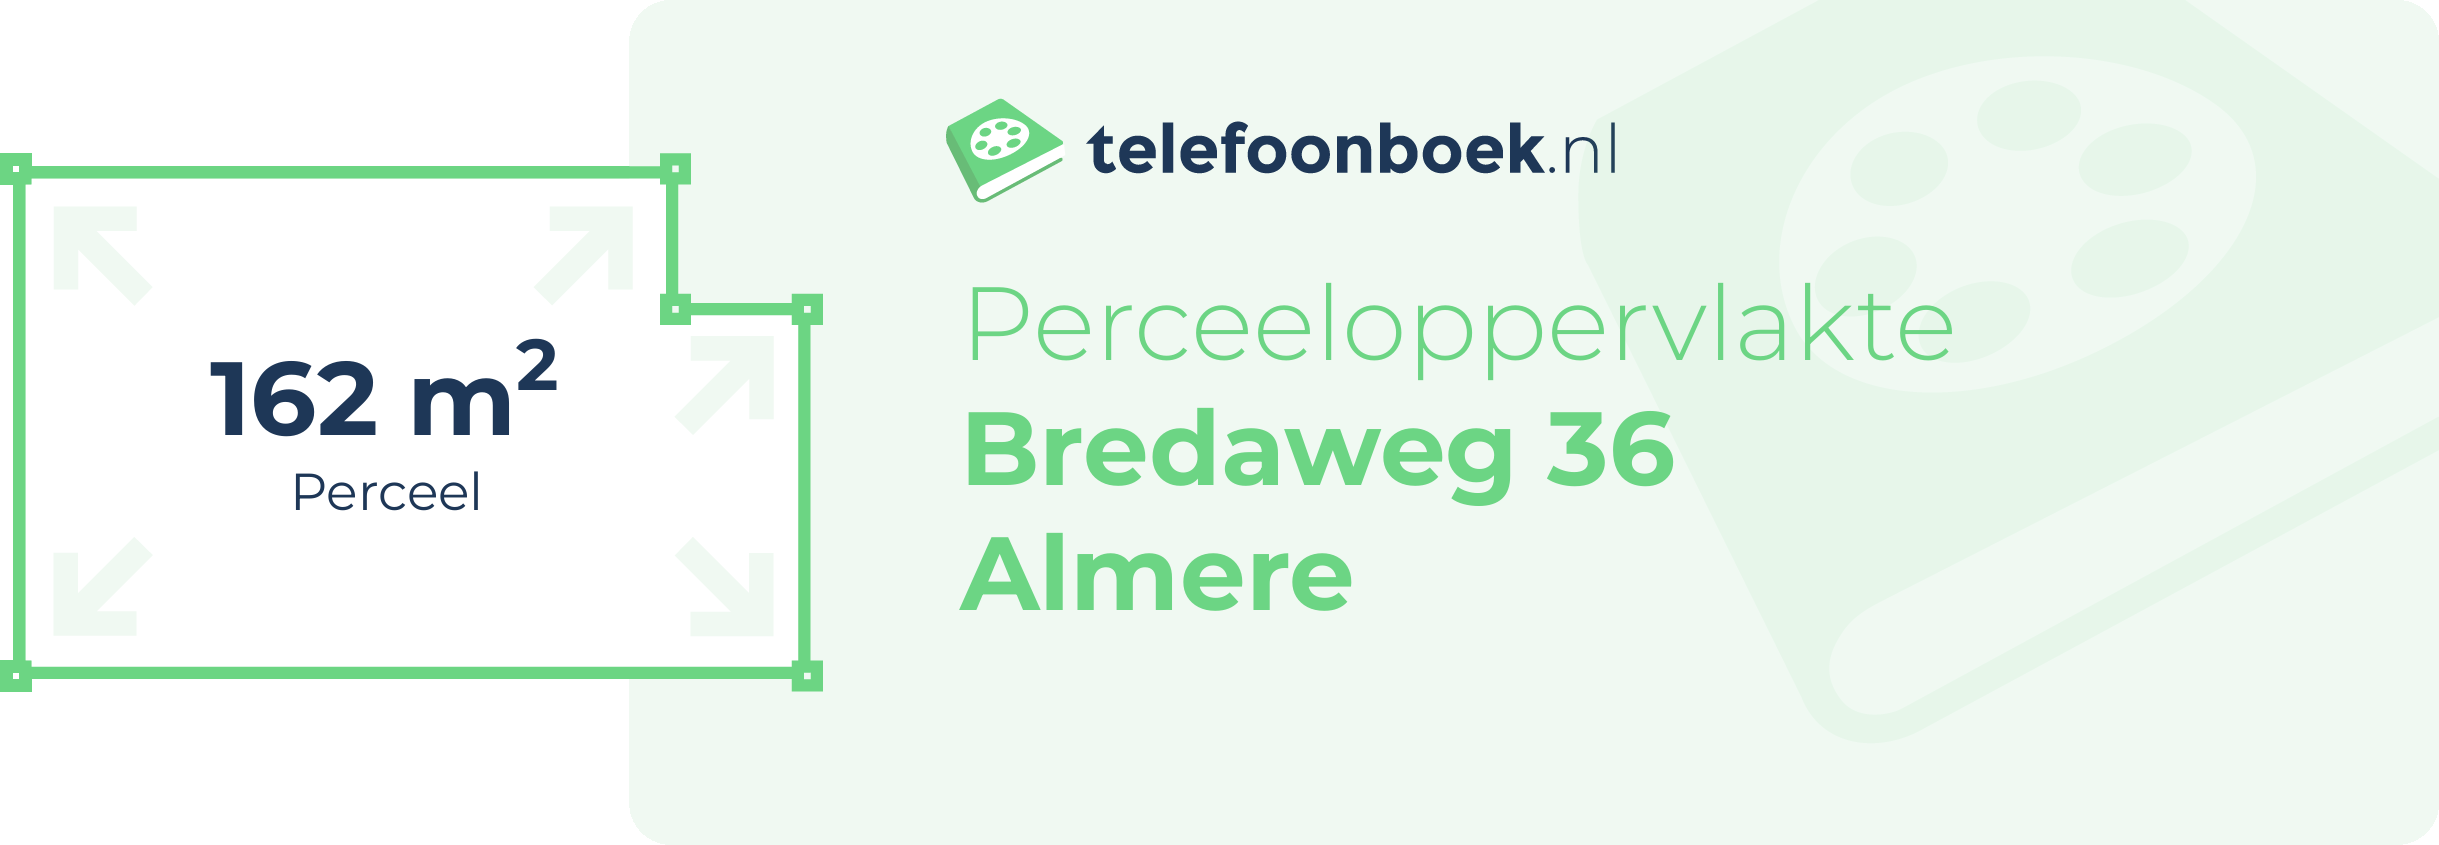 Perceeloppervlakte Bredaweg 36 Almere